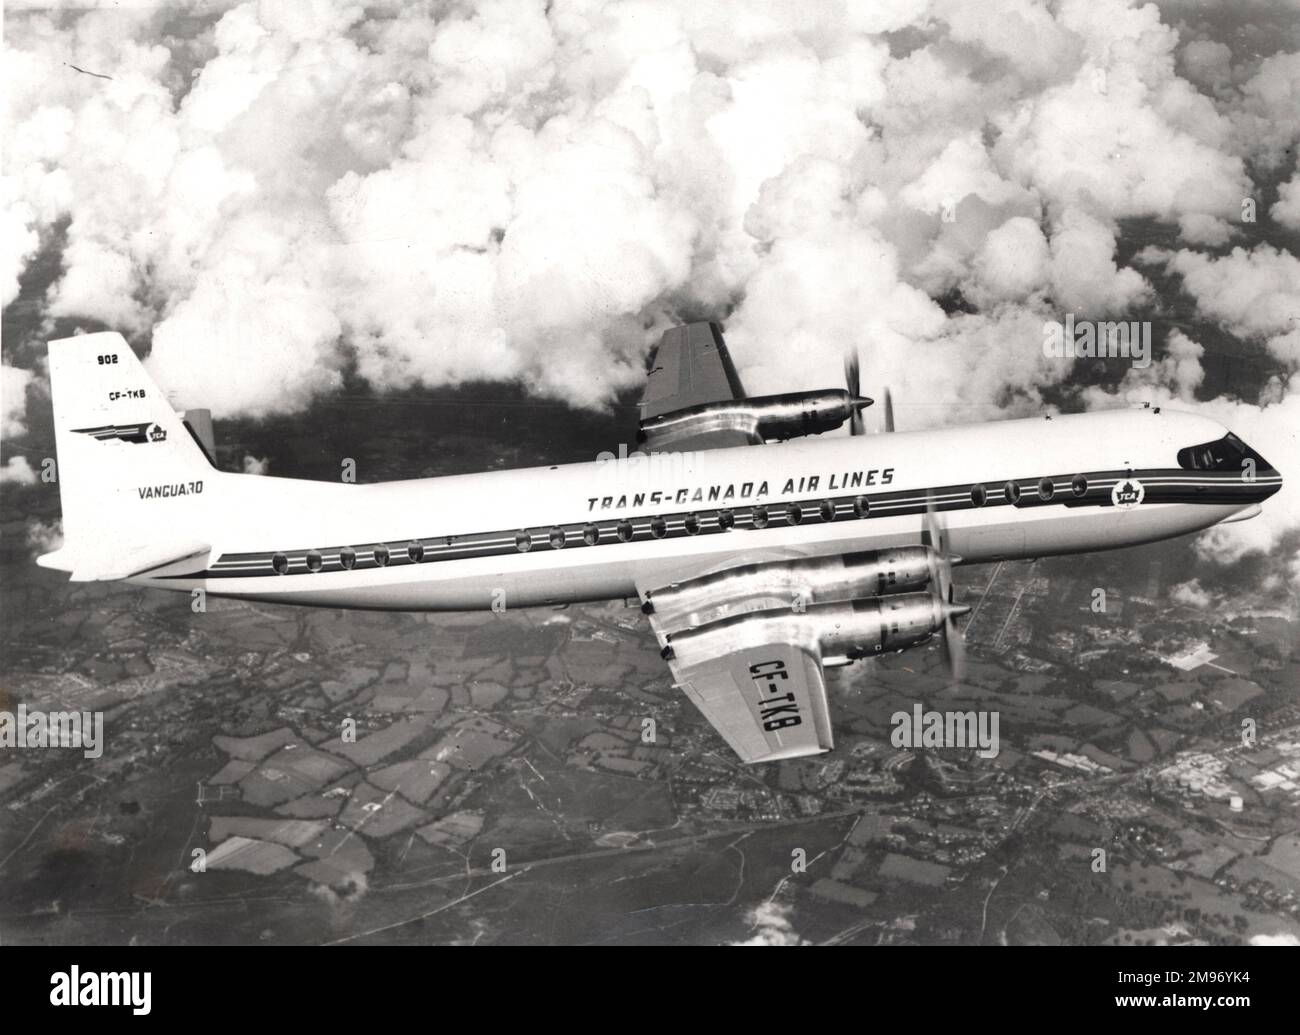 TCA Histórico Da Linha Aérea Do Transporte Canadá Imagem de Stock Editorial  - Imagem de airlines, turismo: 98696364